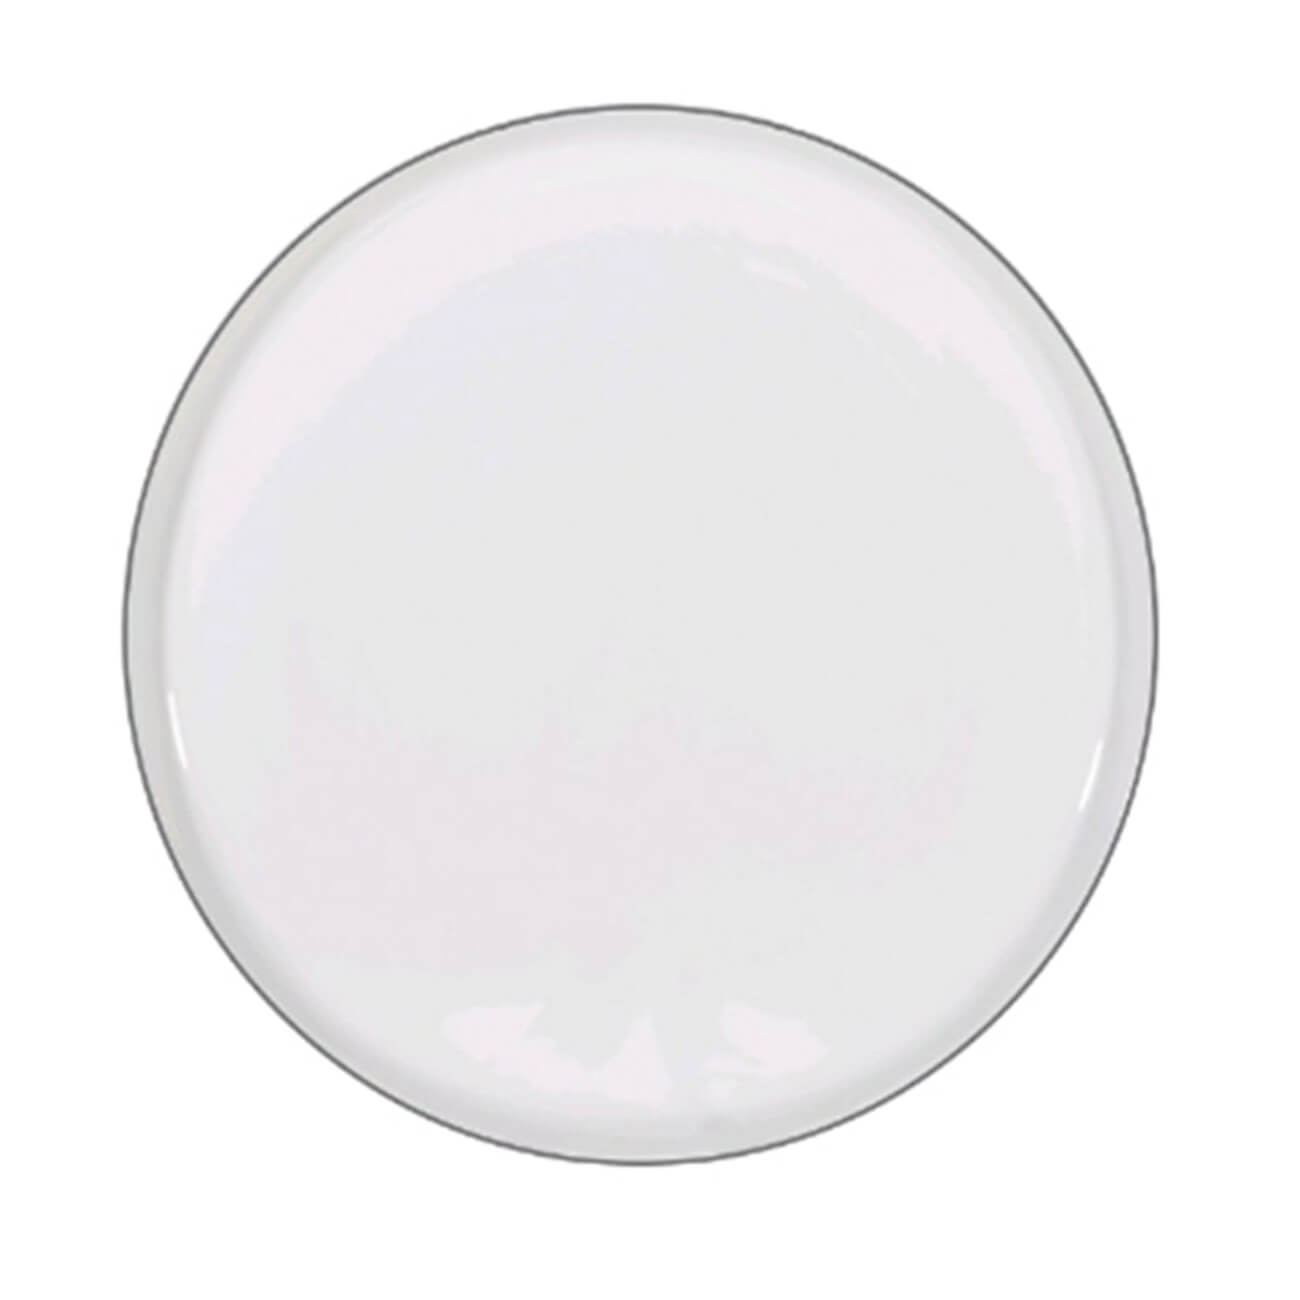 Тарелка десертная, 20 см, 2 шт, фарфор F, белая, Ideal silver тарелка десертная golden opal white купол 19 5 см